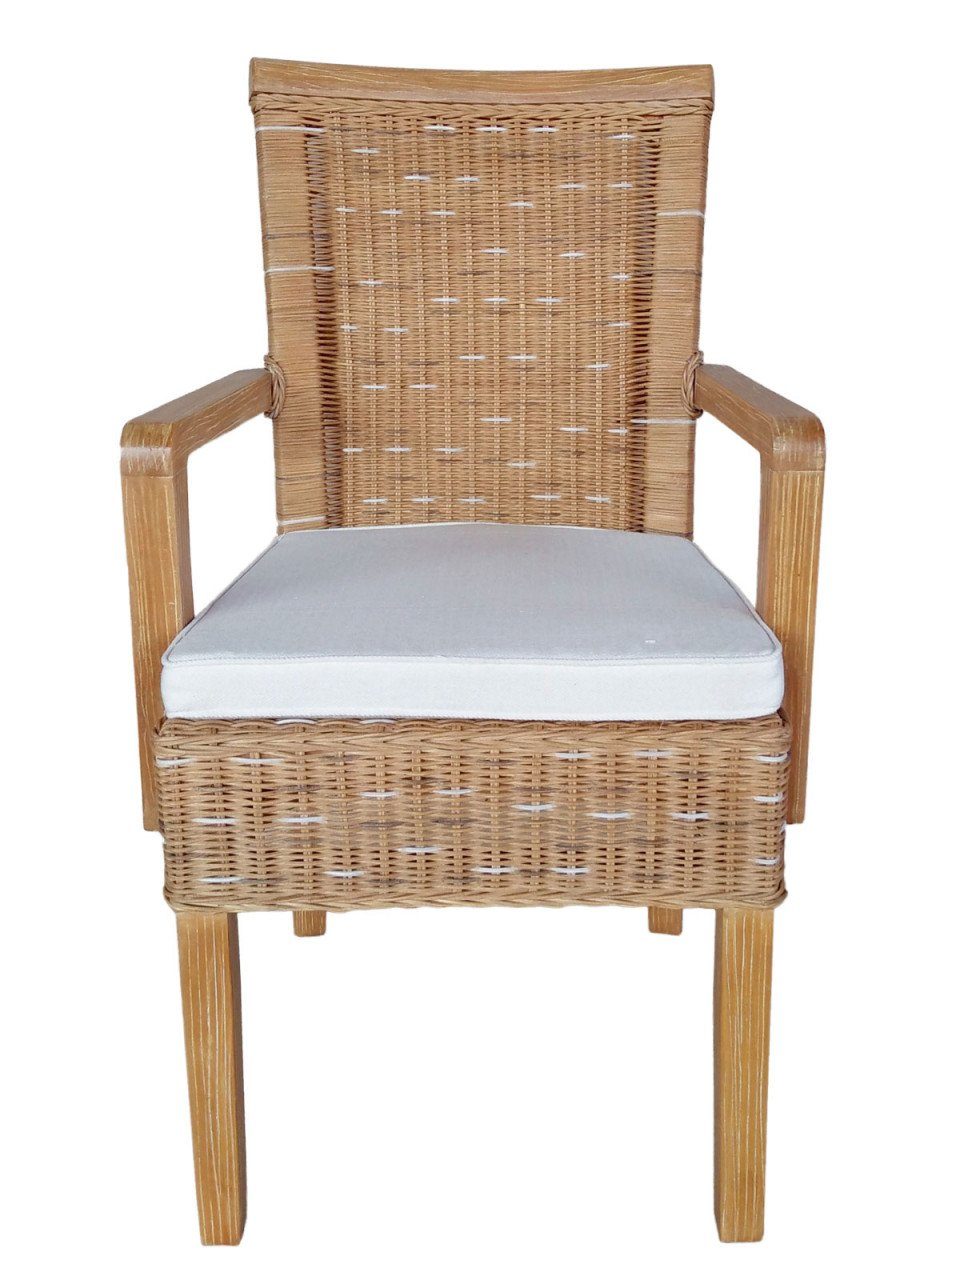 soma Sessel Soma Esszimmer-Stühle-Set mit Armlehnen 4 Stück Rattanstuhl weiß - bra, Stuhl Sessel Sitzplatz Sitzmöbel